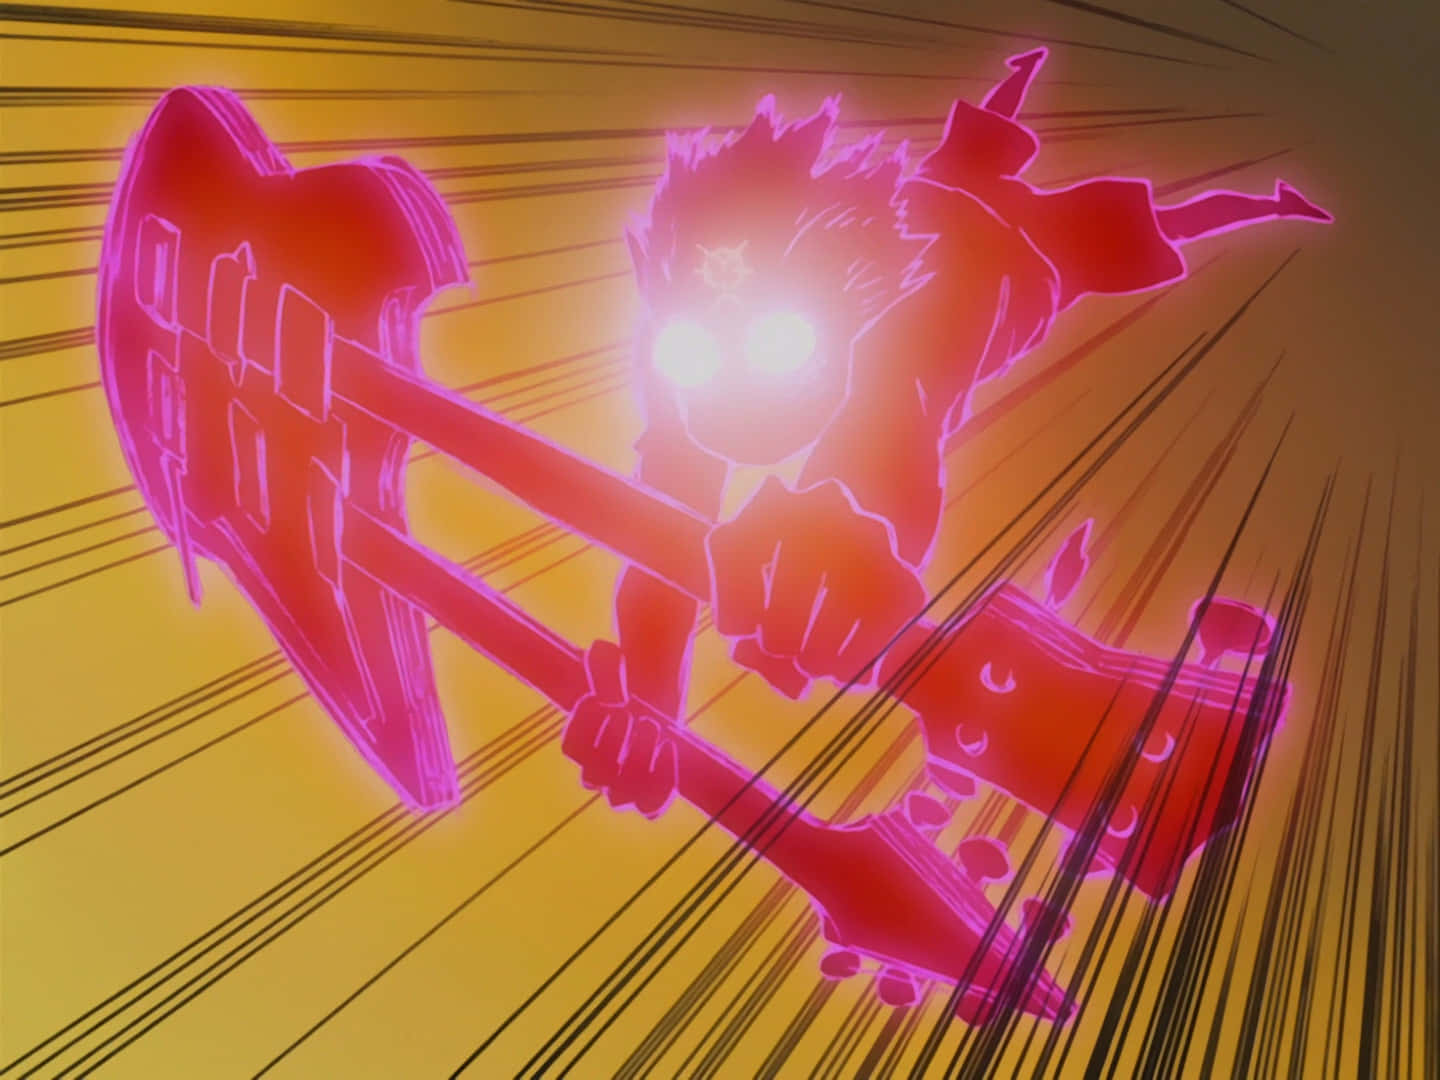 Stjernerne fra anime-serien 'FLCL' skinner fra den glødende elektriske have.